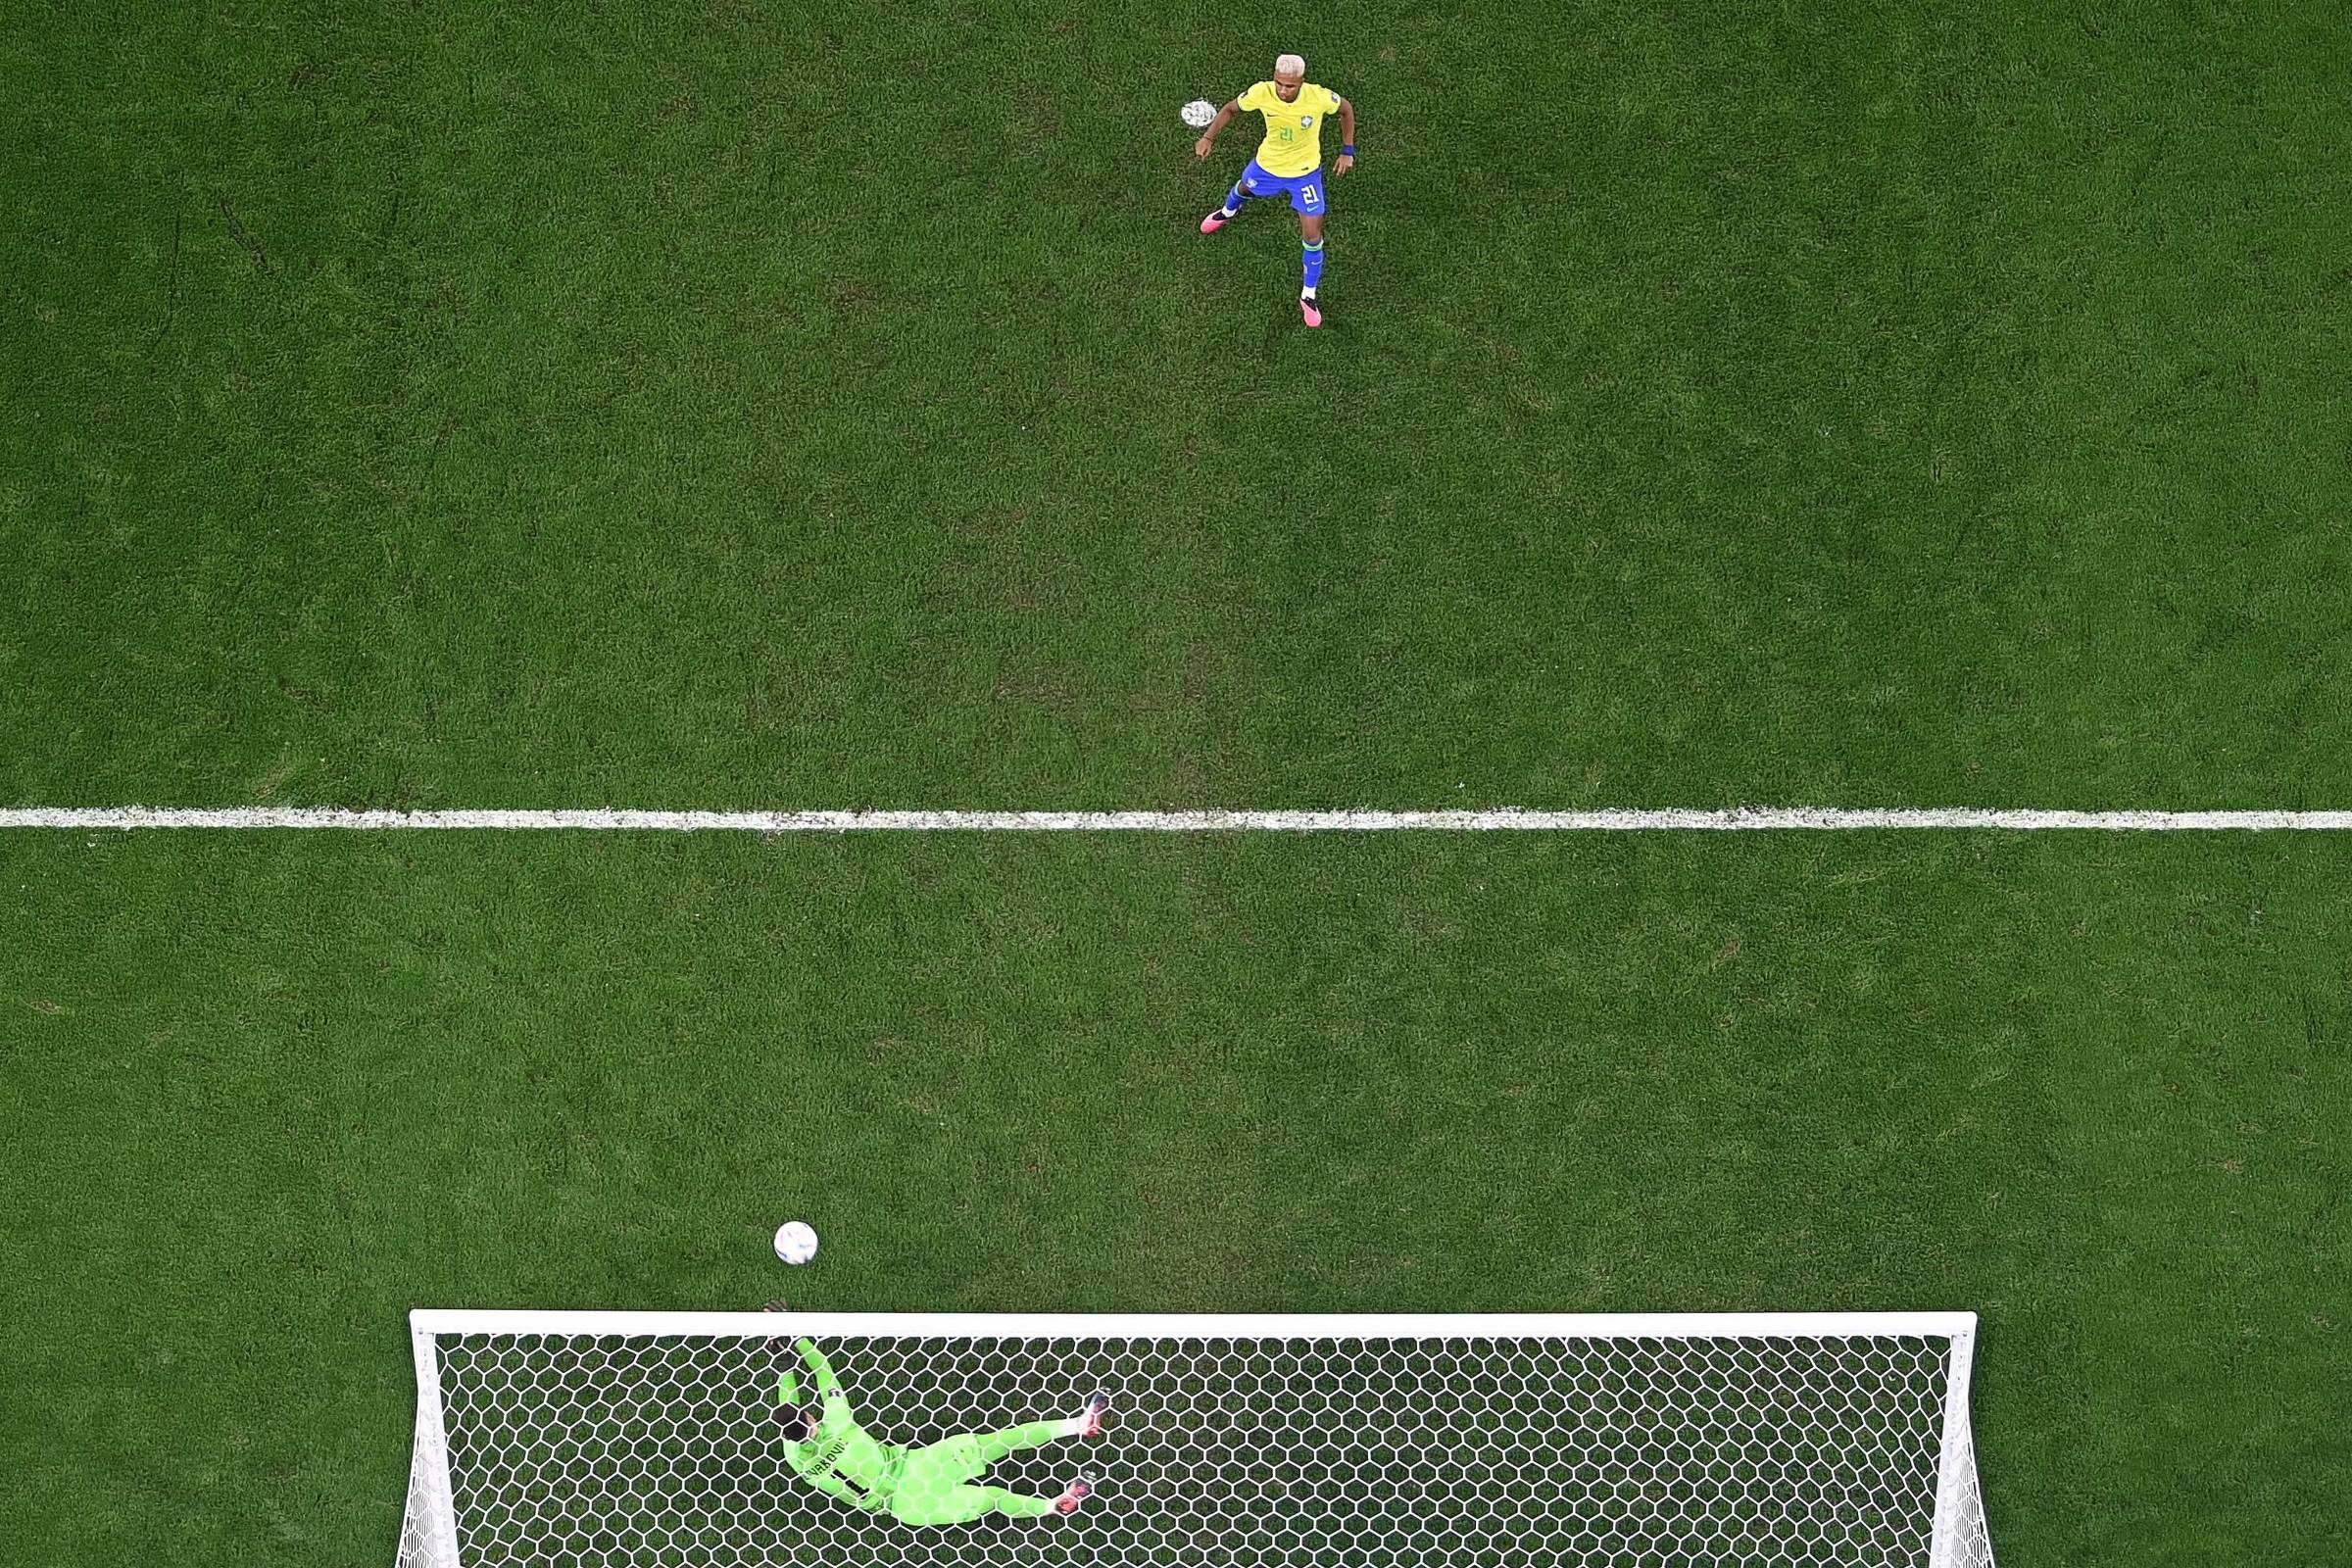 O goleiro chuta a bola no estádio durante um jogo de futebol